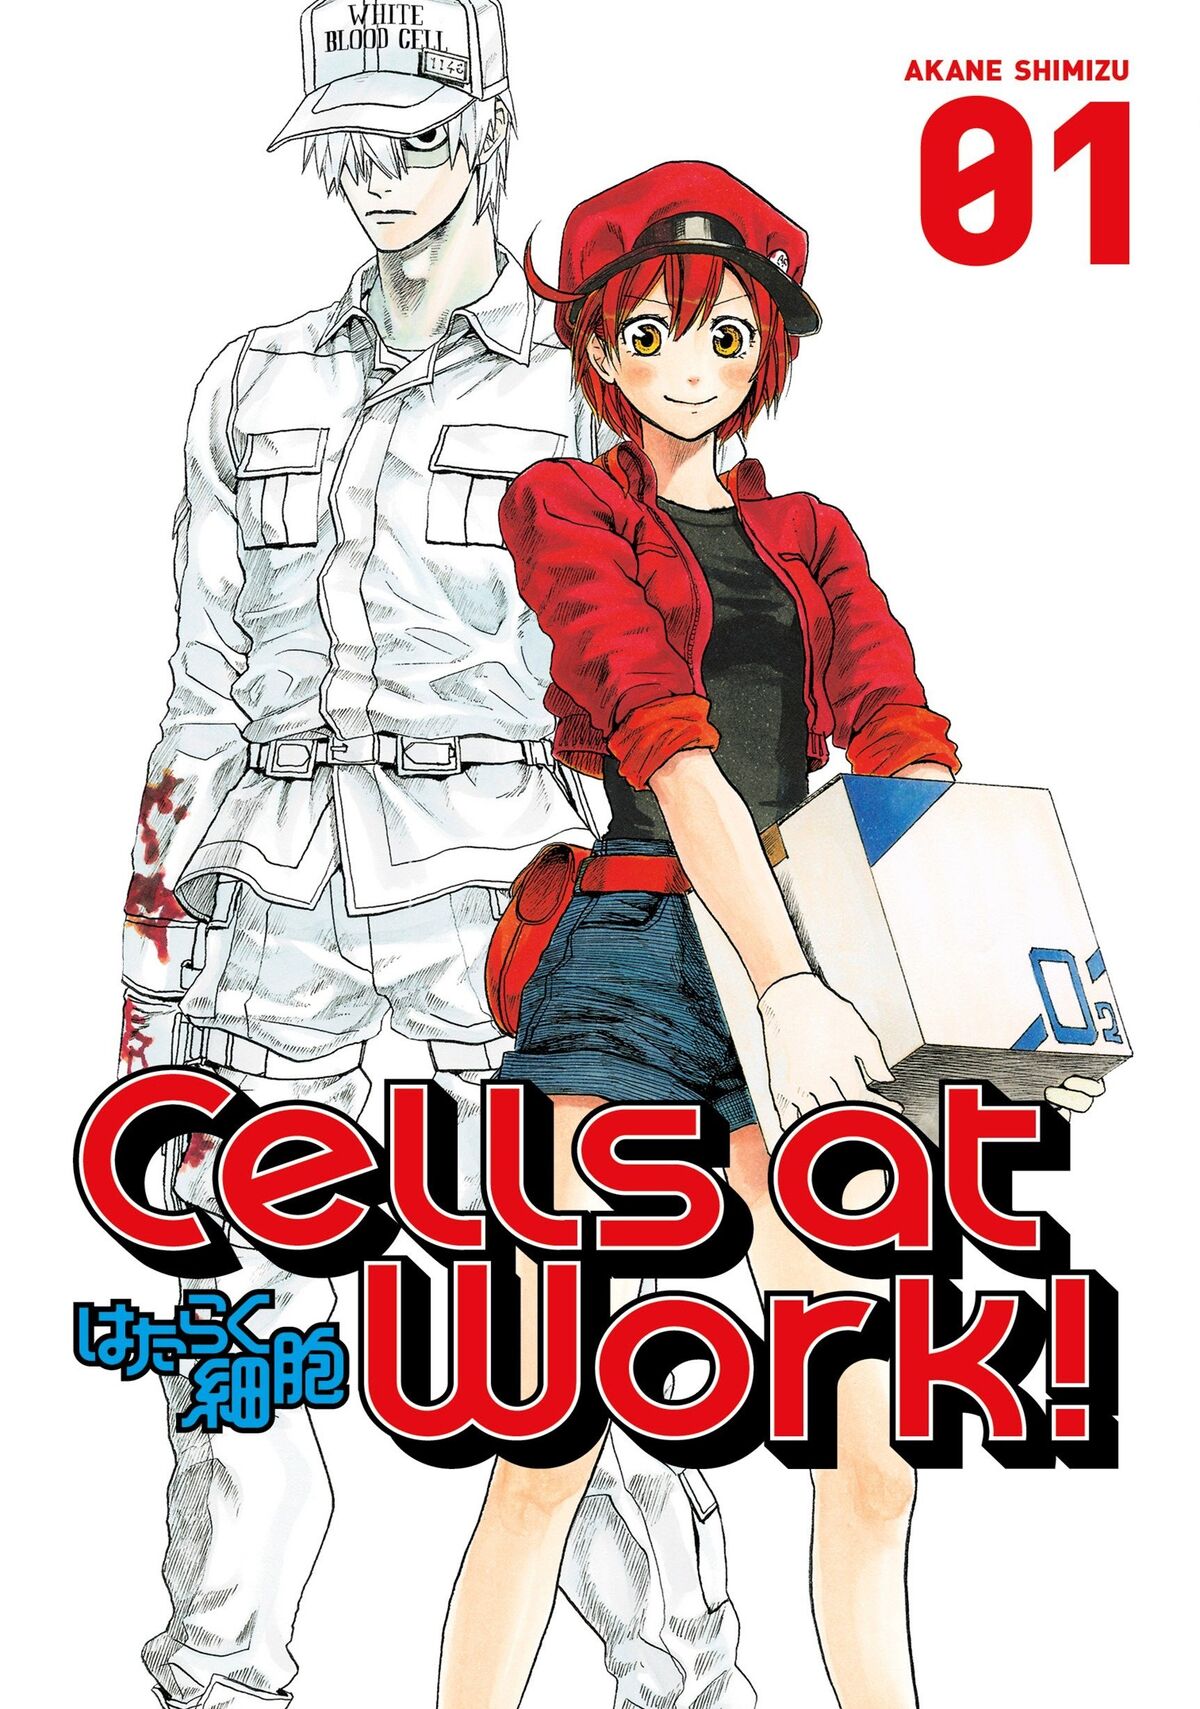 Hataraku saibou BLACK 2 Japanese comic manga anime Cells at Work